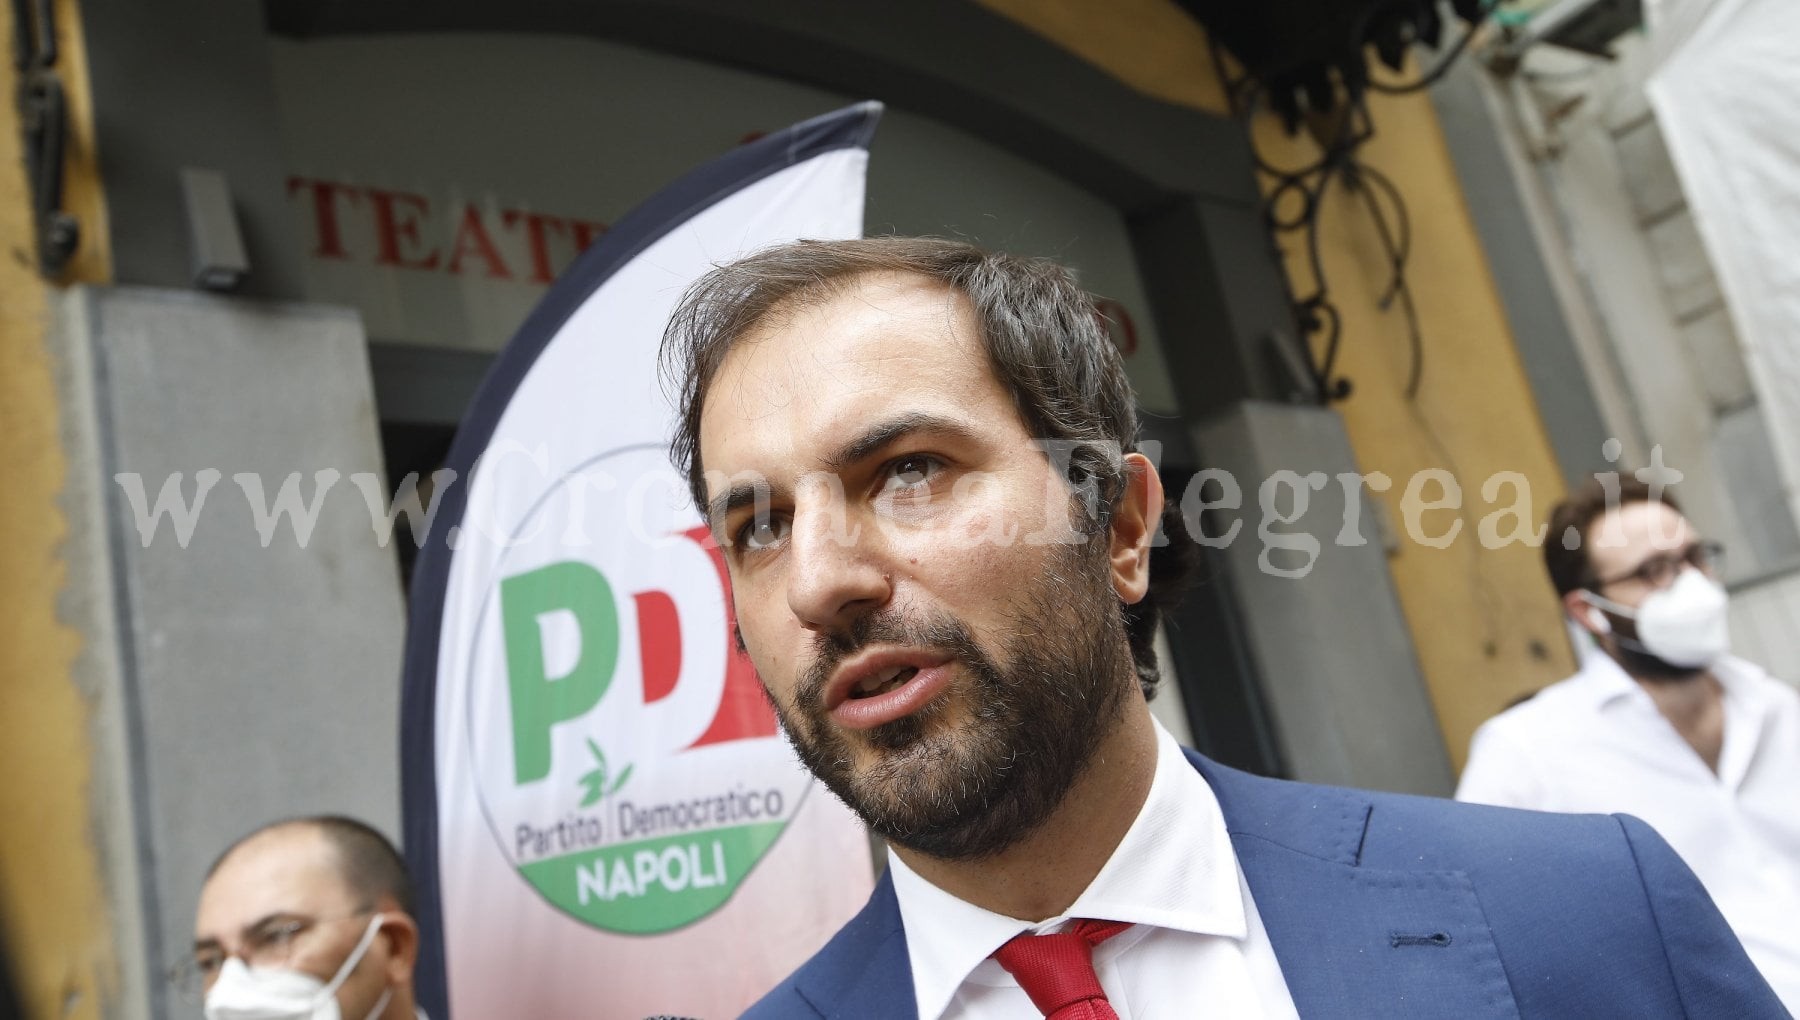 POZZUOLI/ Partito Democratico spaccato: da Napoli 3 nomi per il candidato sindaco